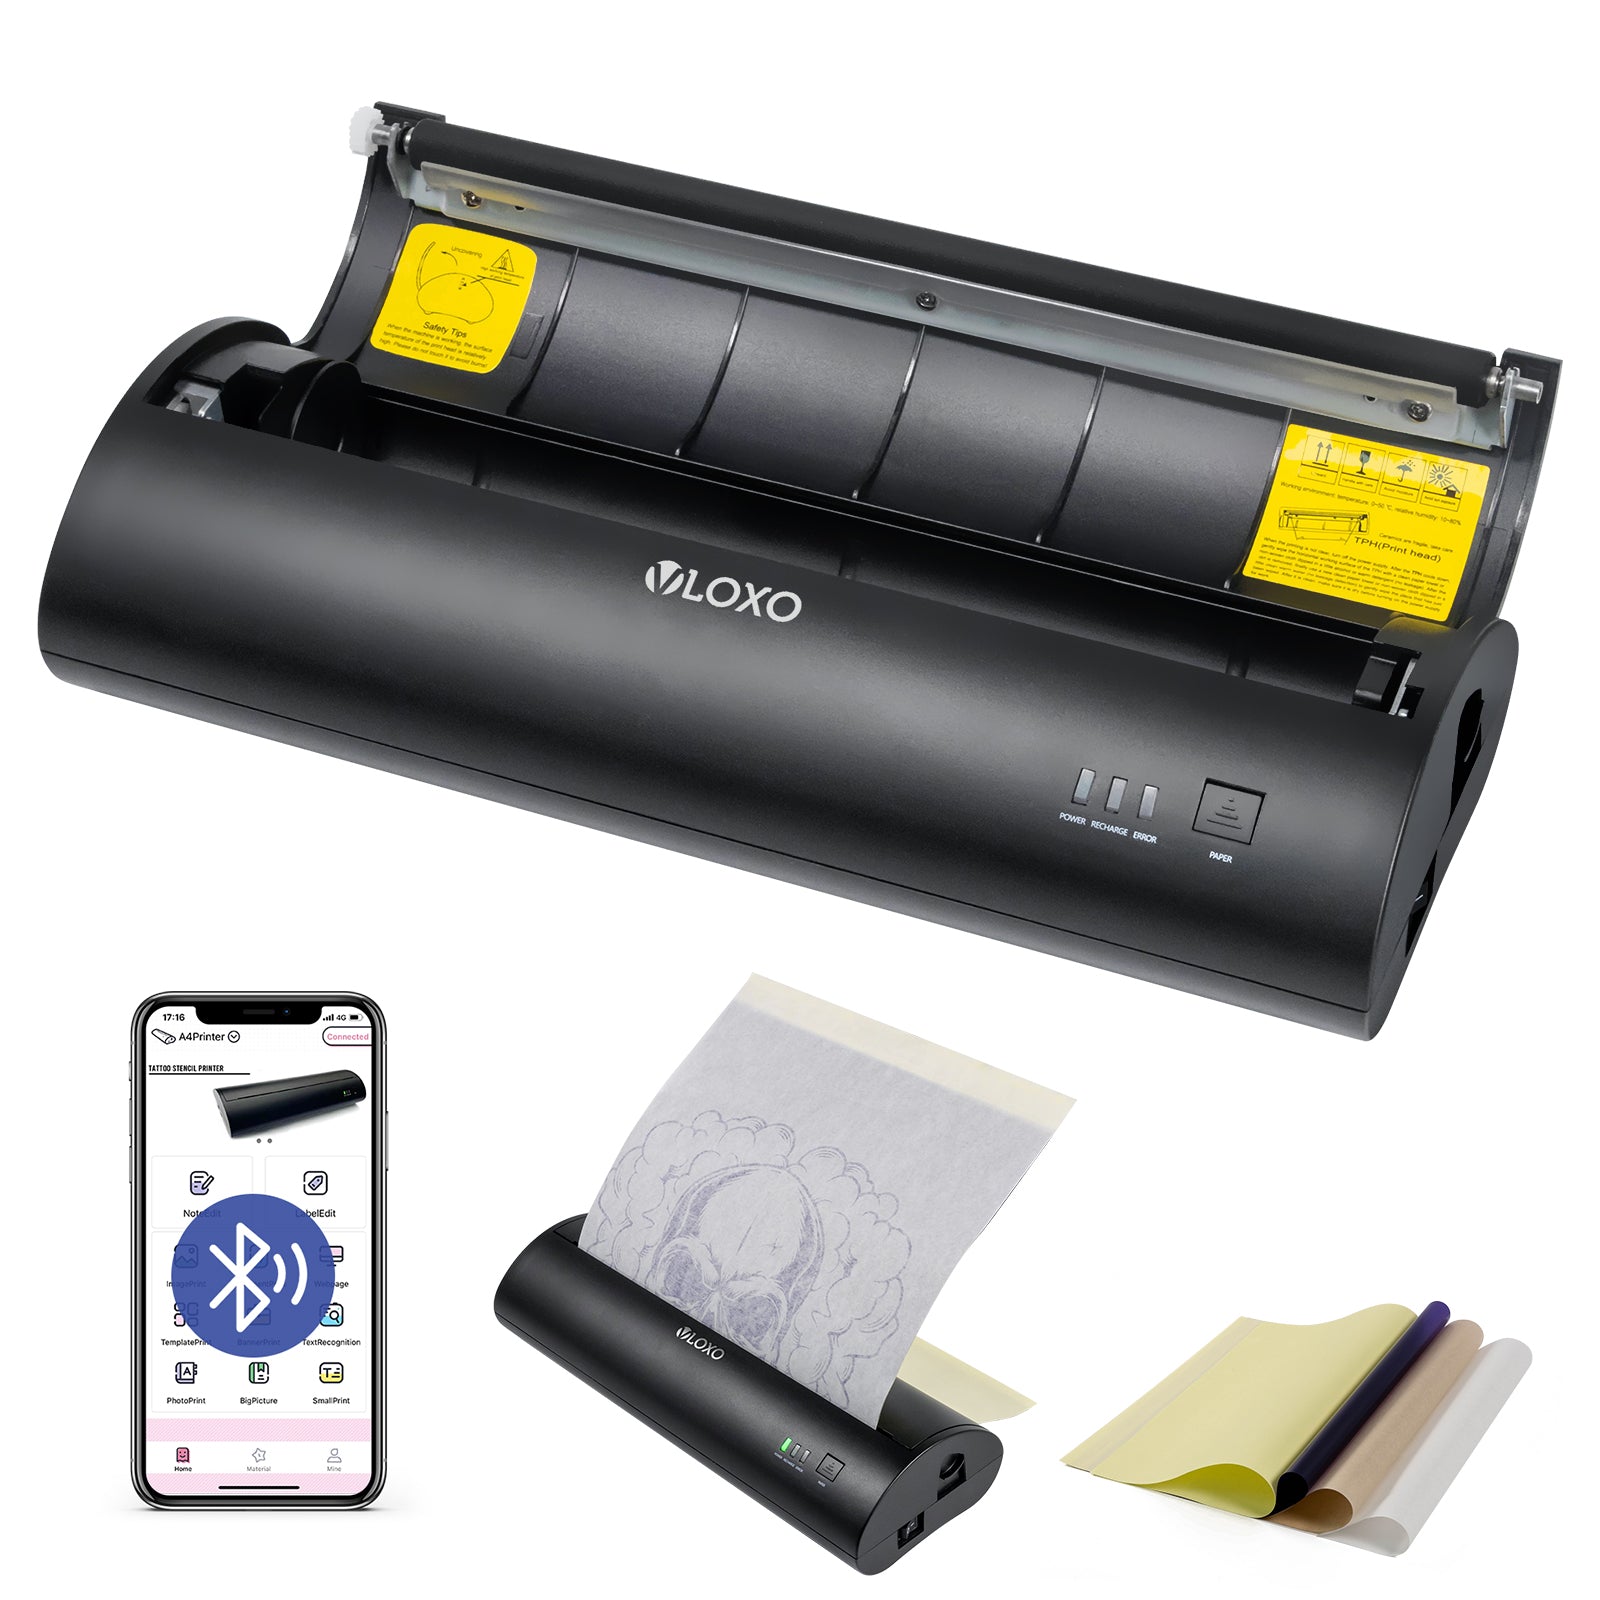 VLOXO Wireless Tattoo Stencil Printer, Portable Tattoo Thermal